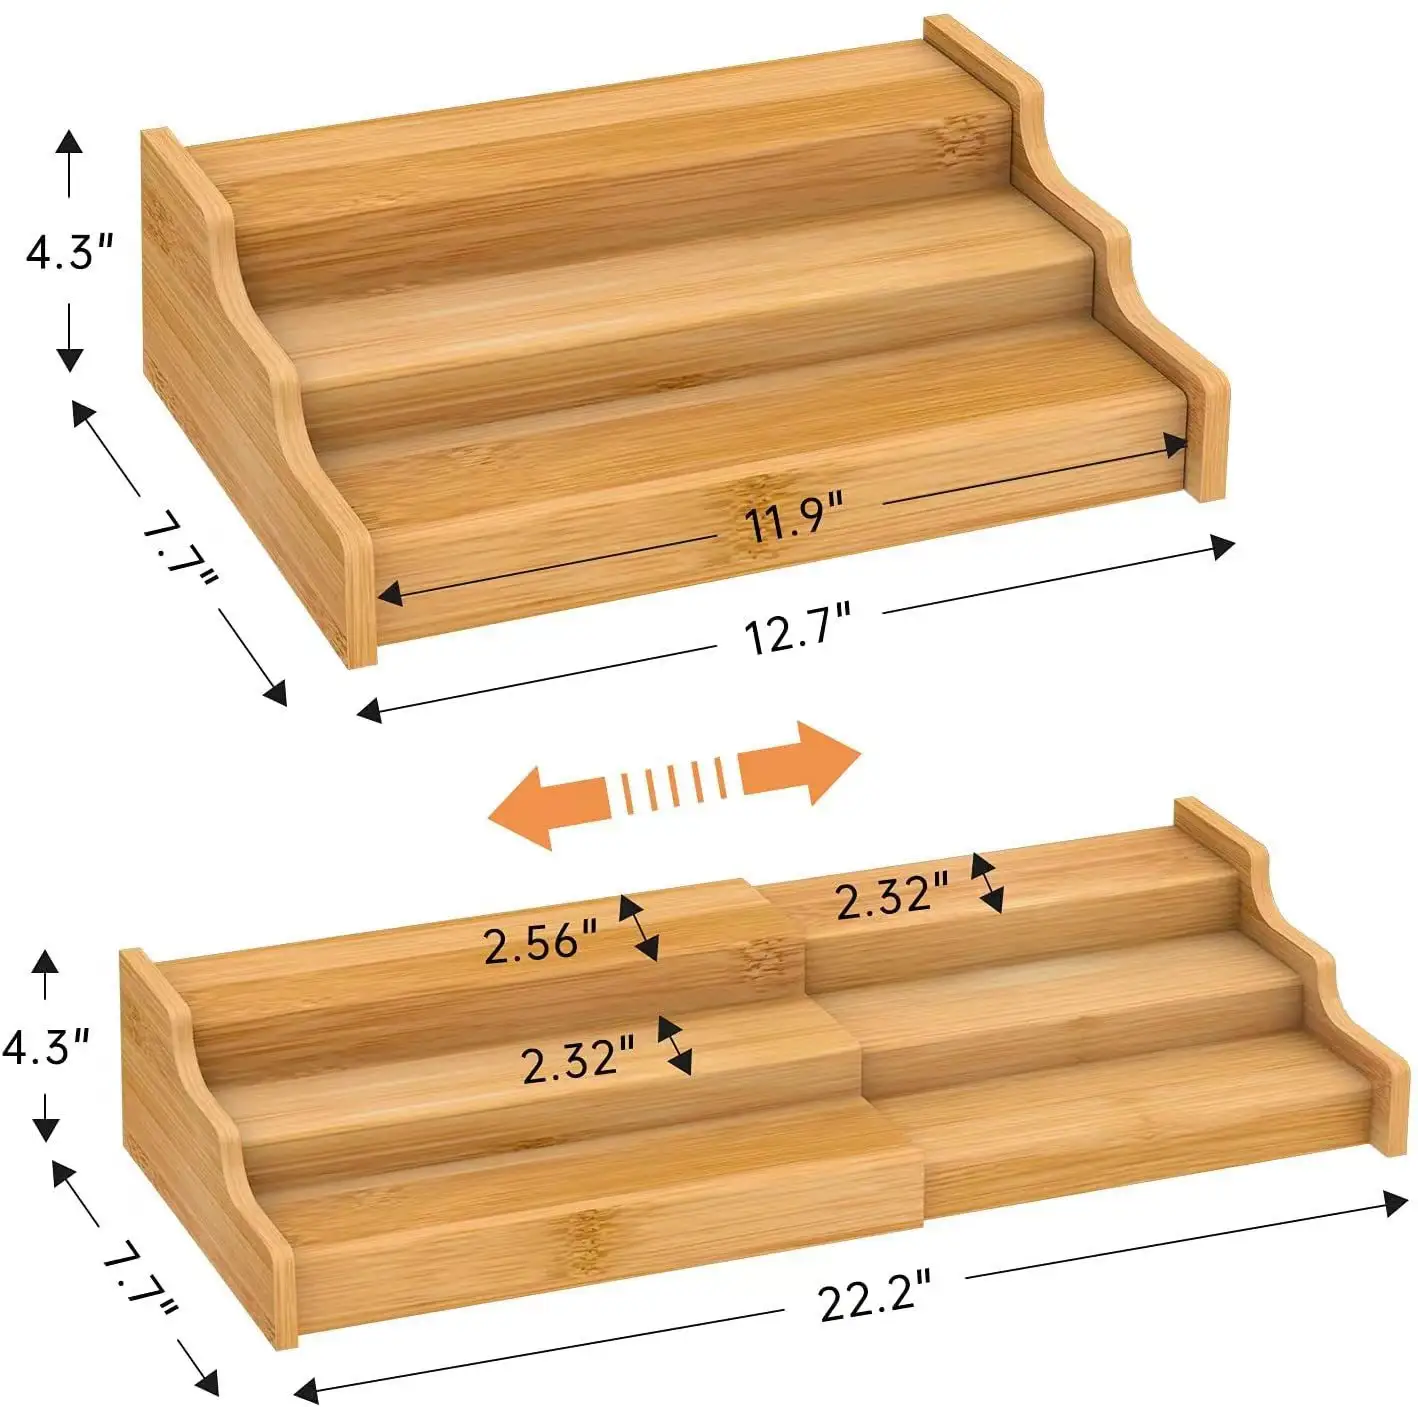 キッチン卓上竹3層階段型拡張可能調味料ラックホルダー木製ディスプレイラックスパイスジャーラックオーガナイザー